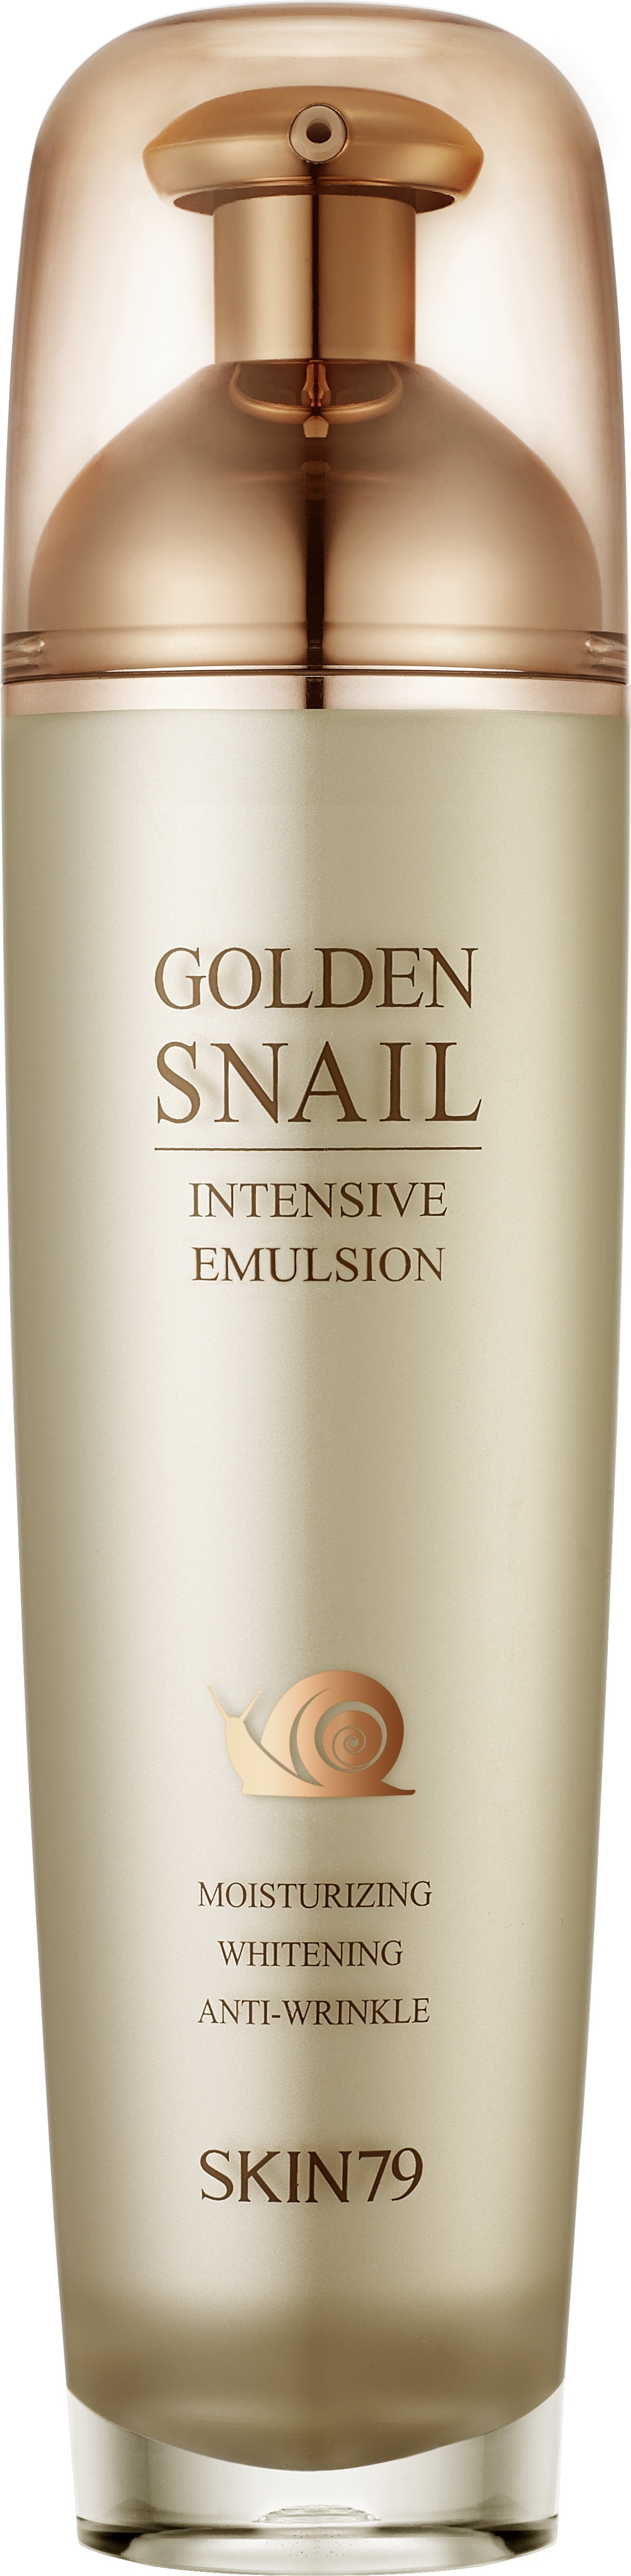 Skin Golden Snail Intensive Emulsion